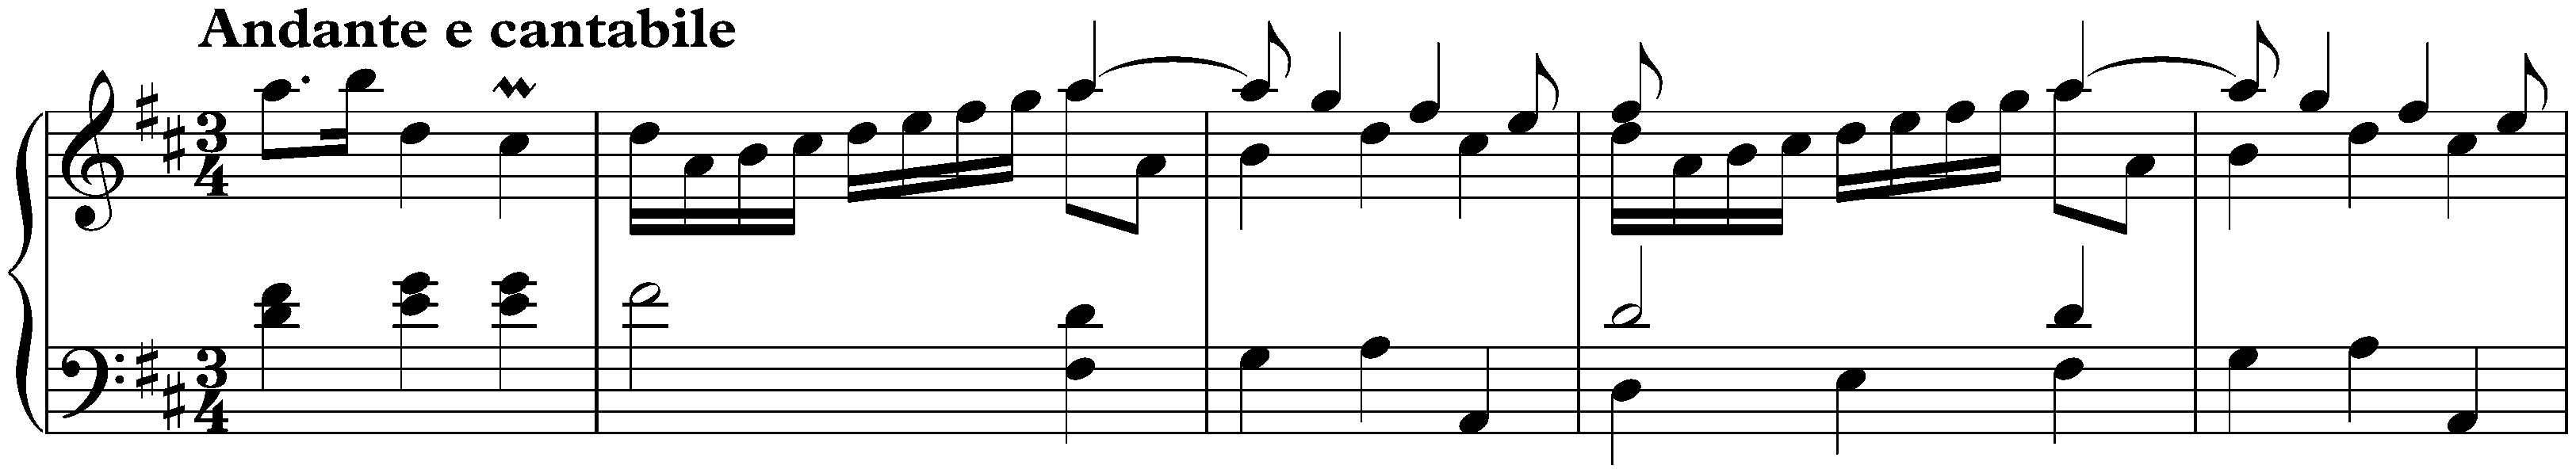 Sonata in D major, K. 478